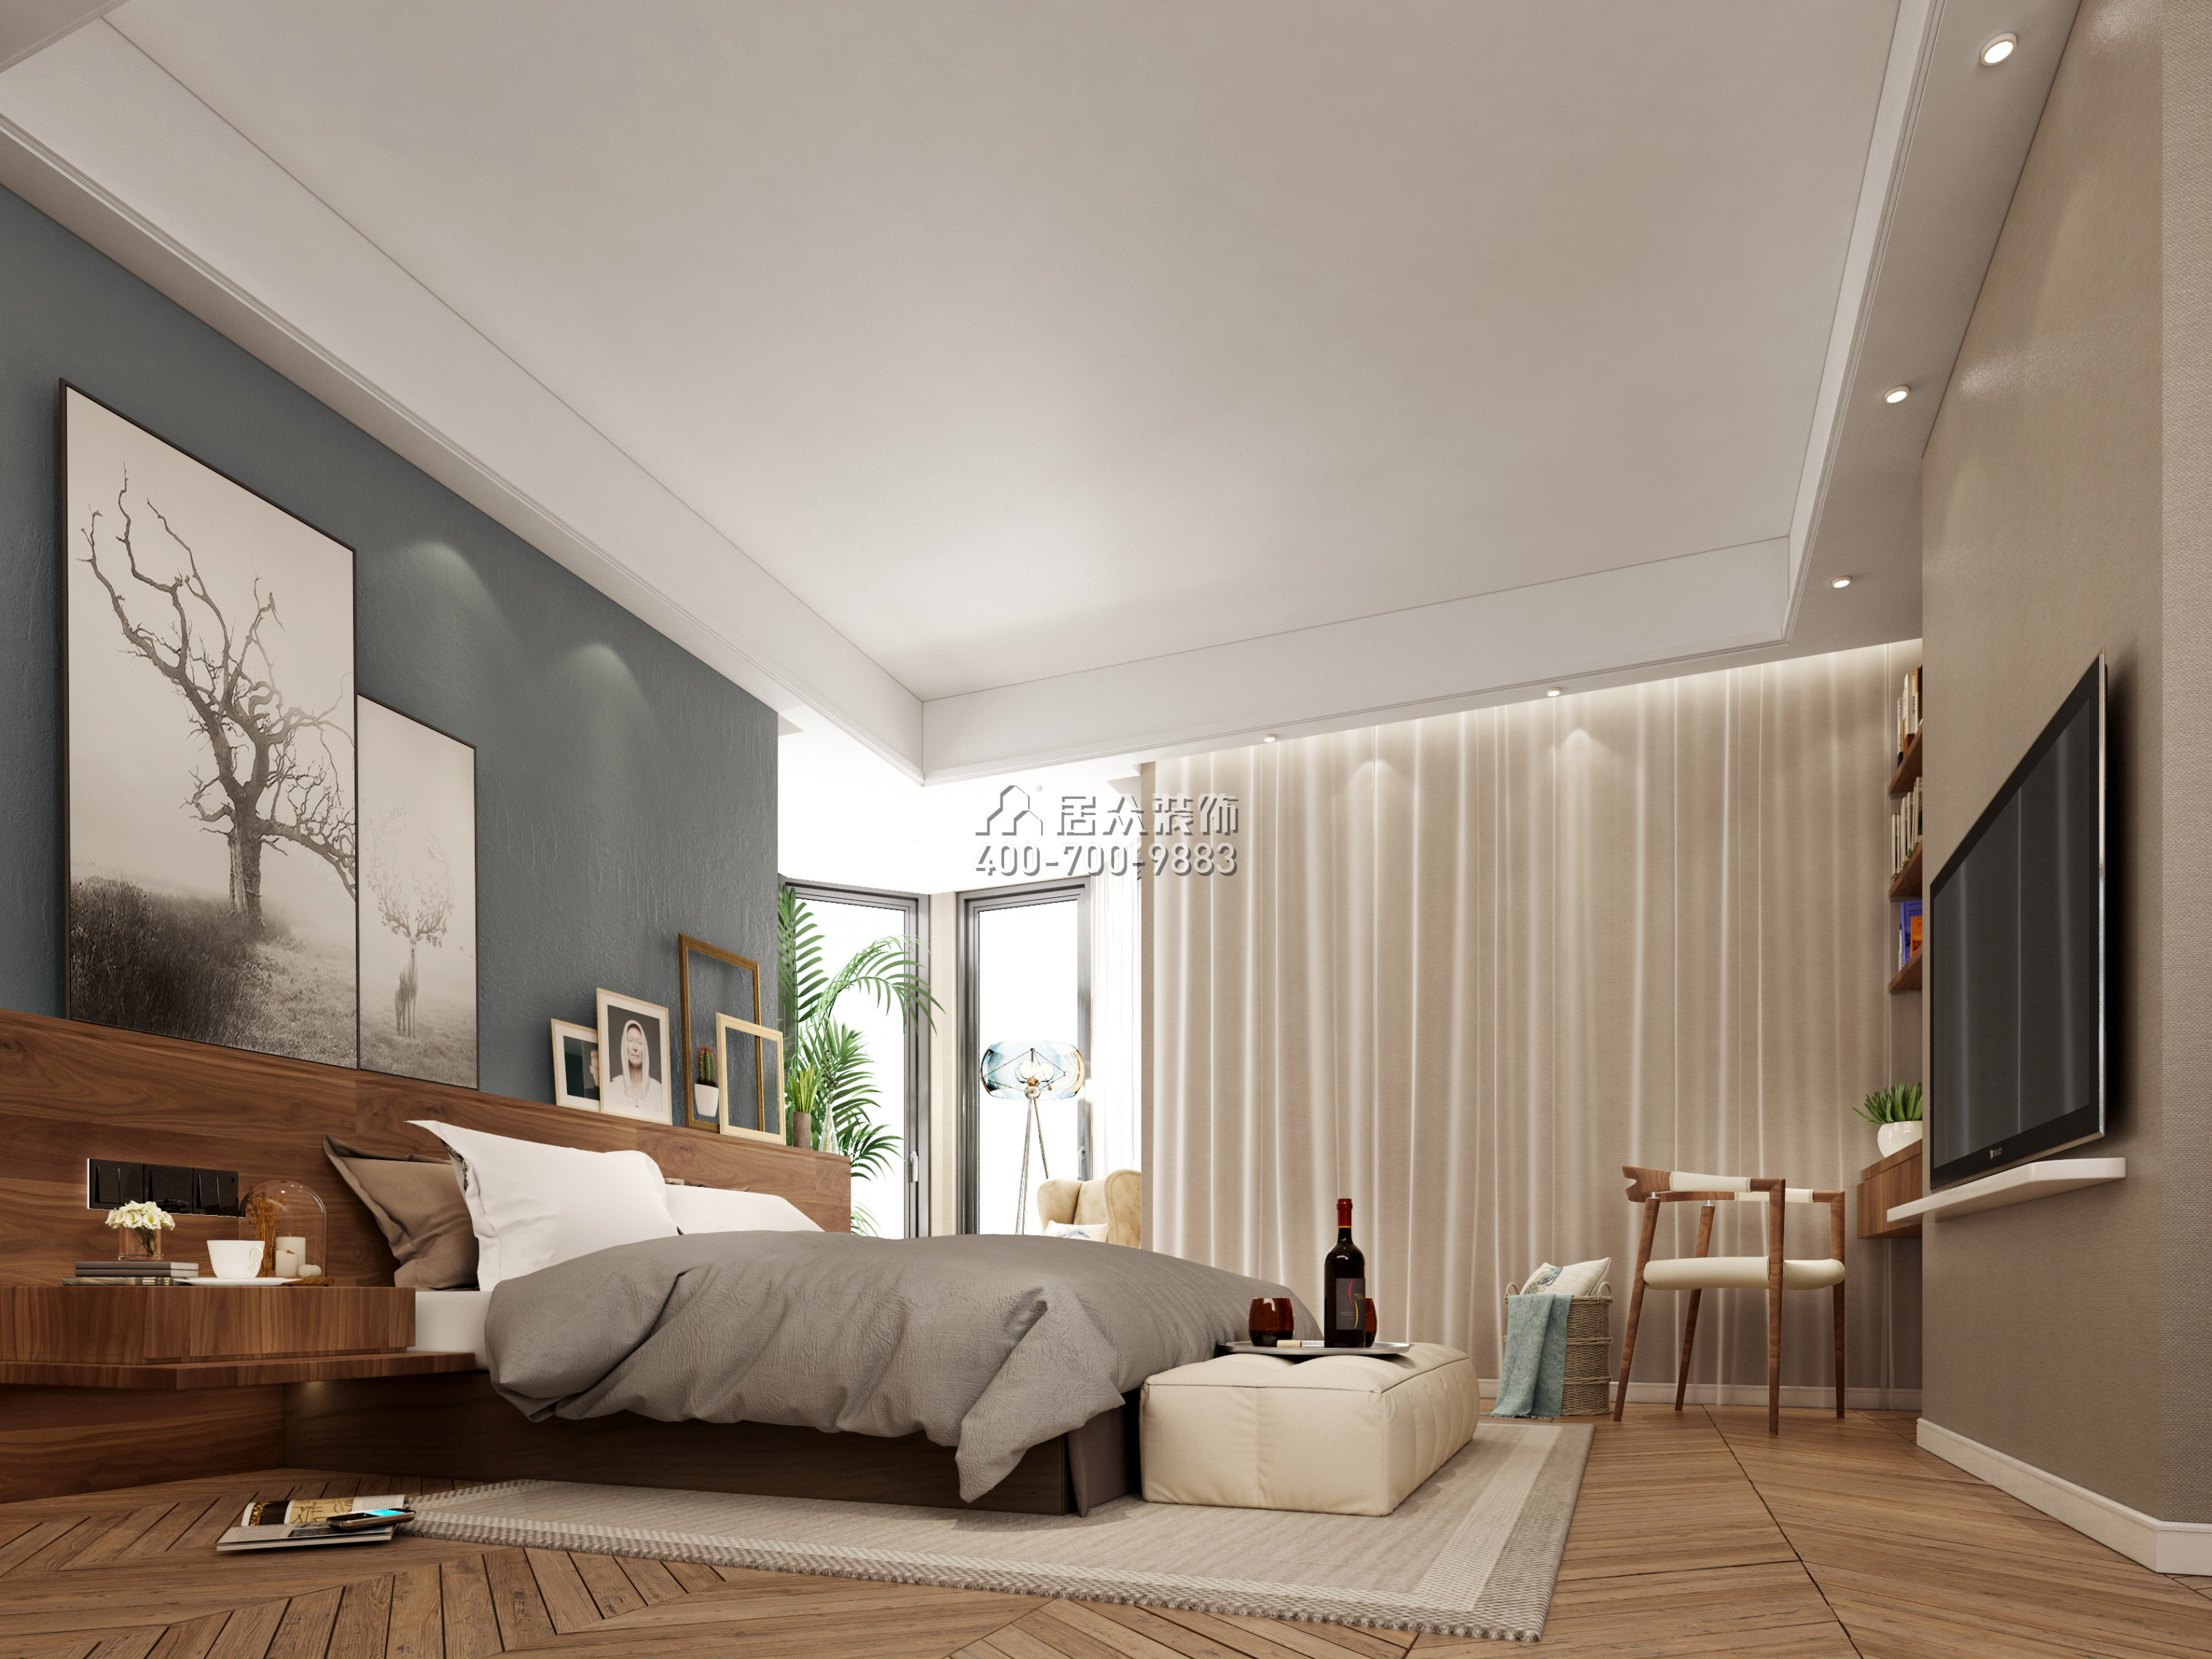 雍景閣180平方米美式風格平層戶型臥室裝修效果圖